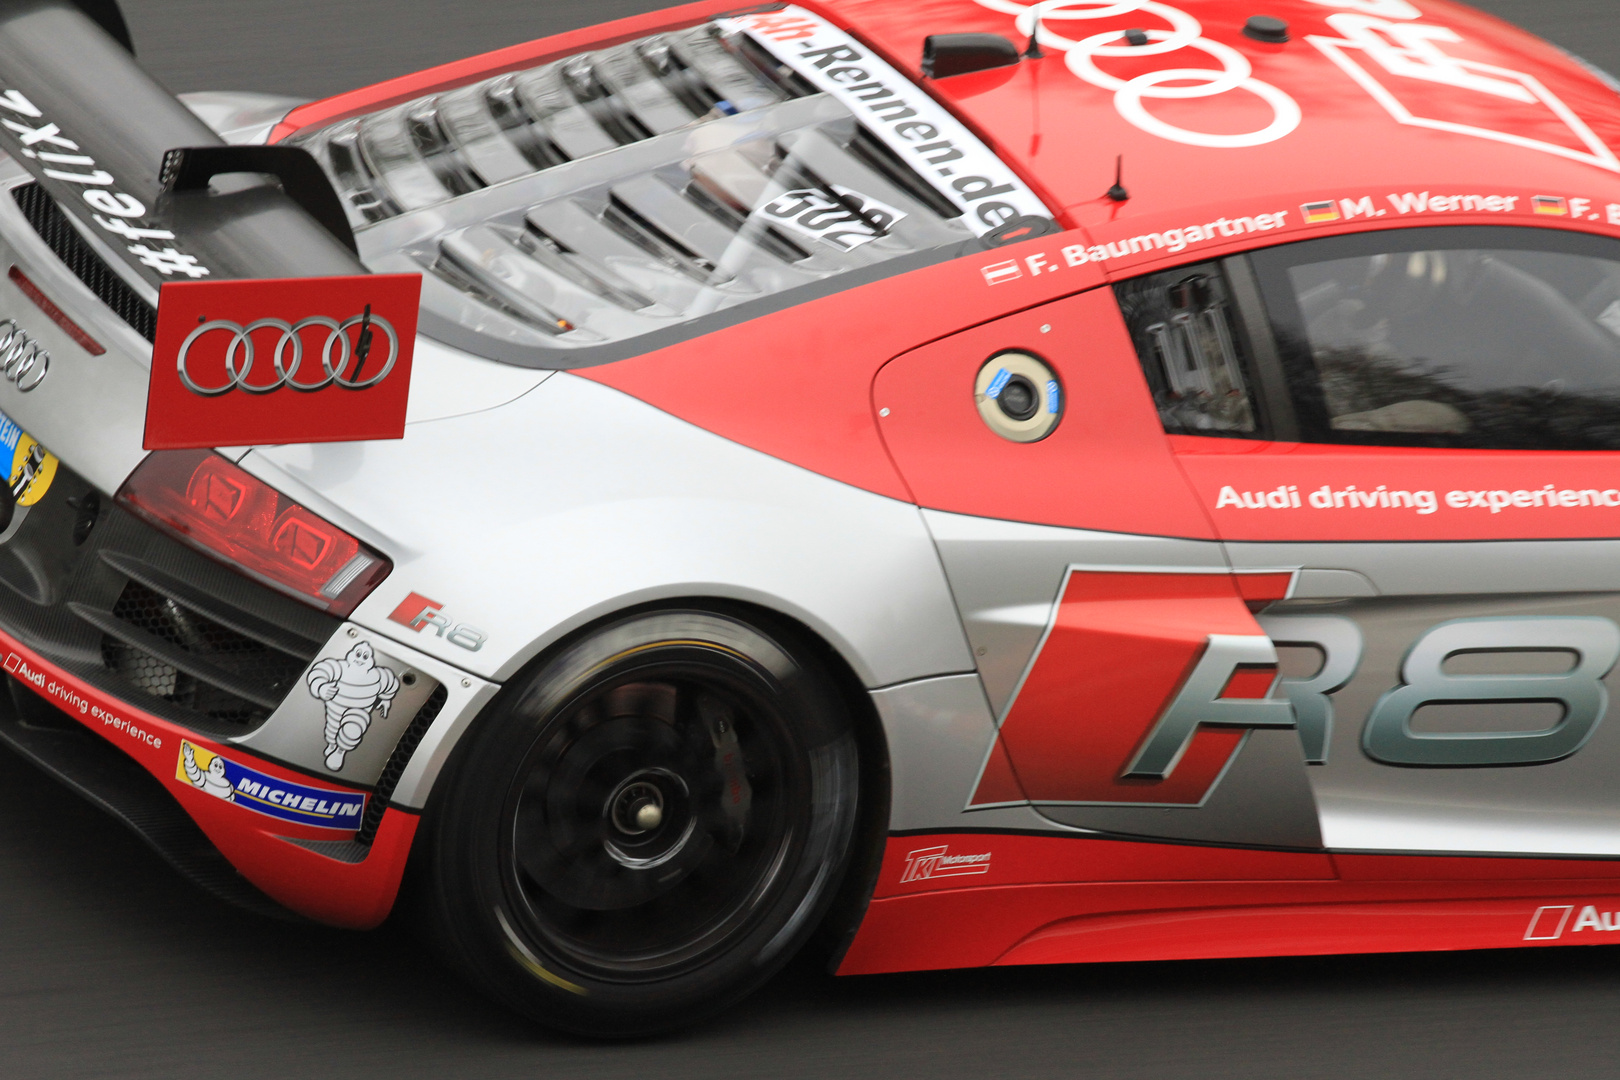 Audi R8 LMS -Testlauf für 24h Rennen